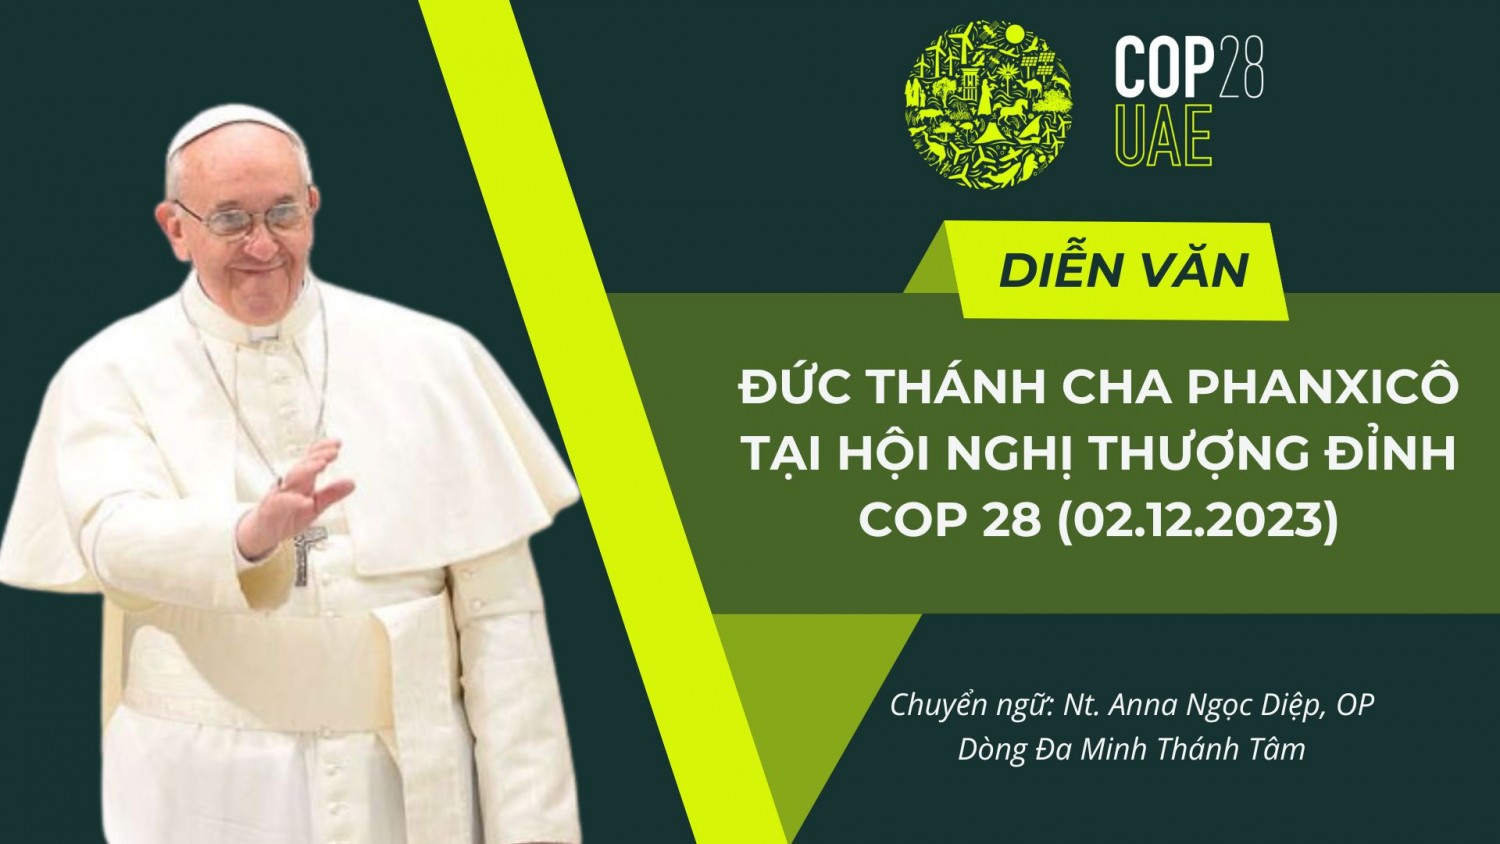 Bài diễn văn của Đức Thánh Cha Phanxicô tại Hội nghị COP28, 02.12.2023